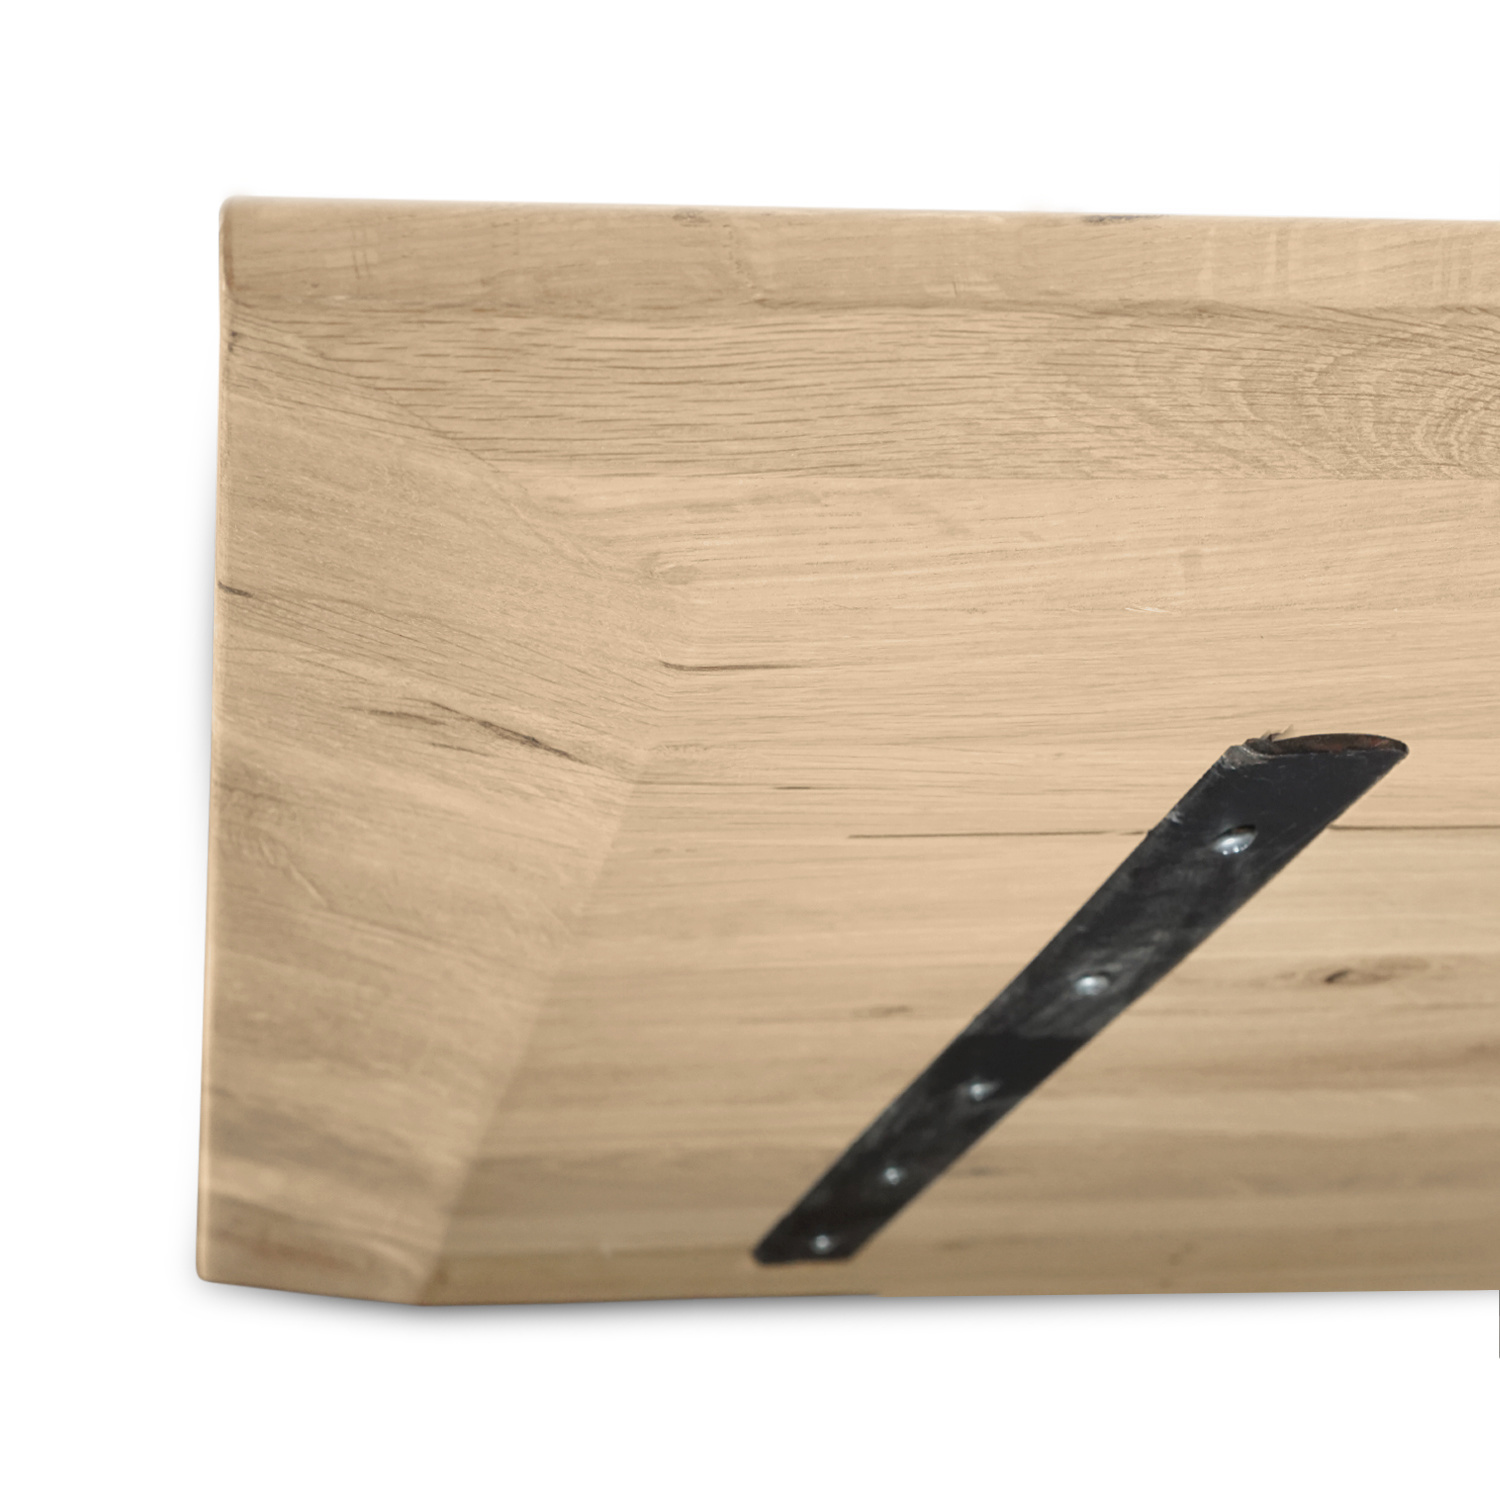  Eiken tafelblad verjongd op maat - 4 cm dik (1-laag) - rustiek Europees eikenhout - met brede lamellen (circa 14-20 cm) - verlijmd kd 8-12% - 40-117x80-250 cm